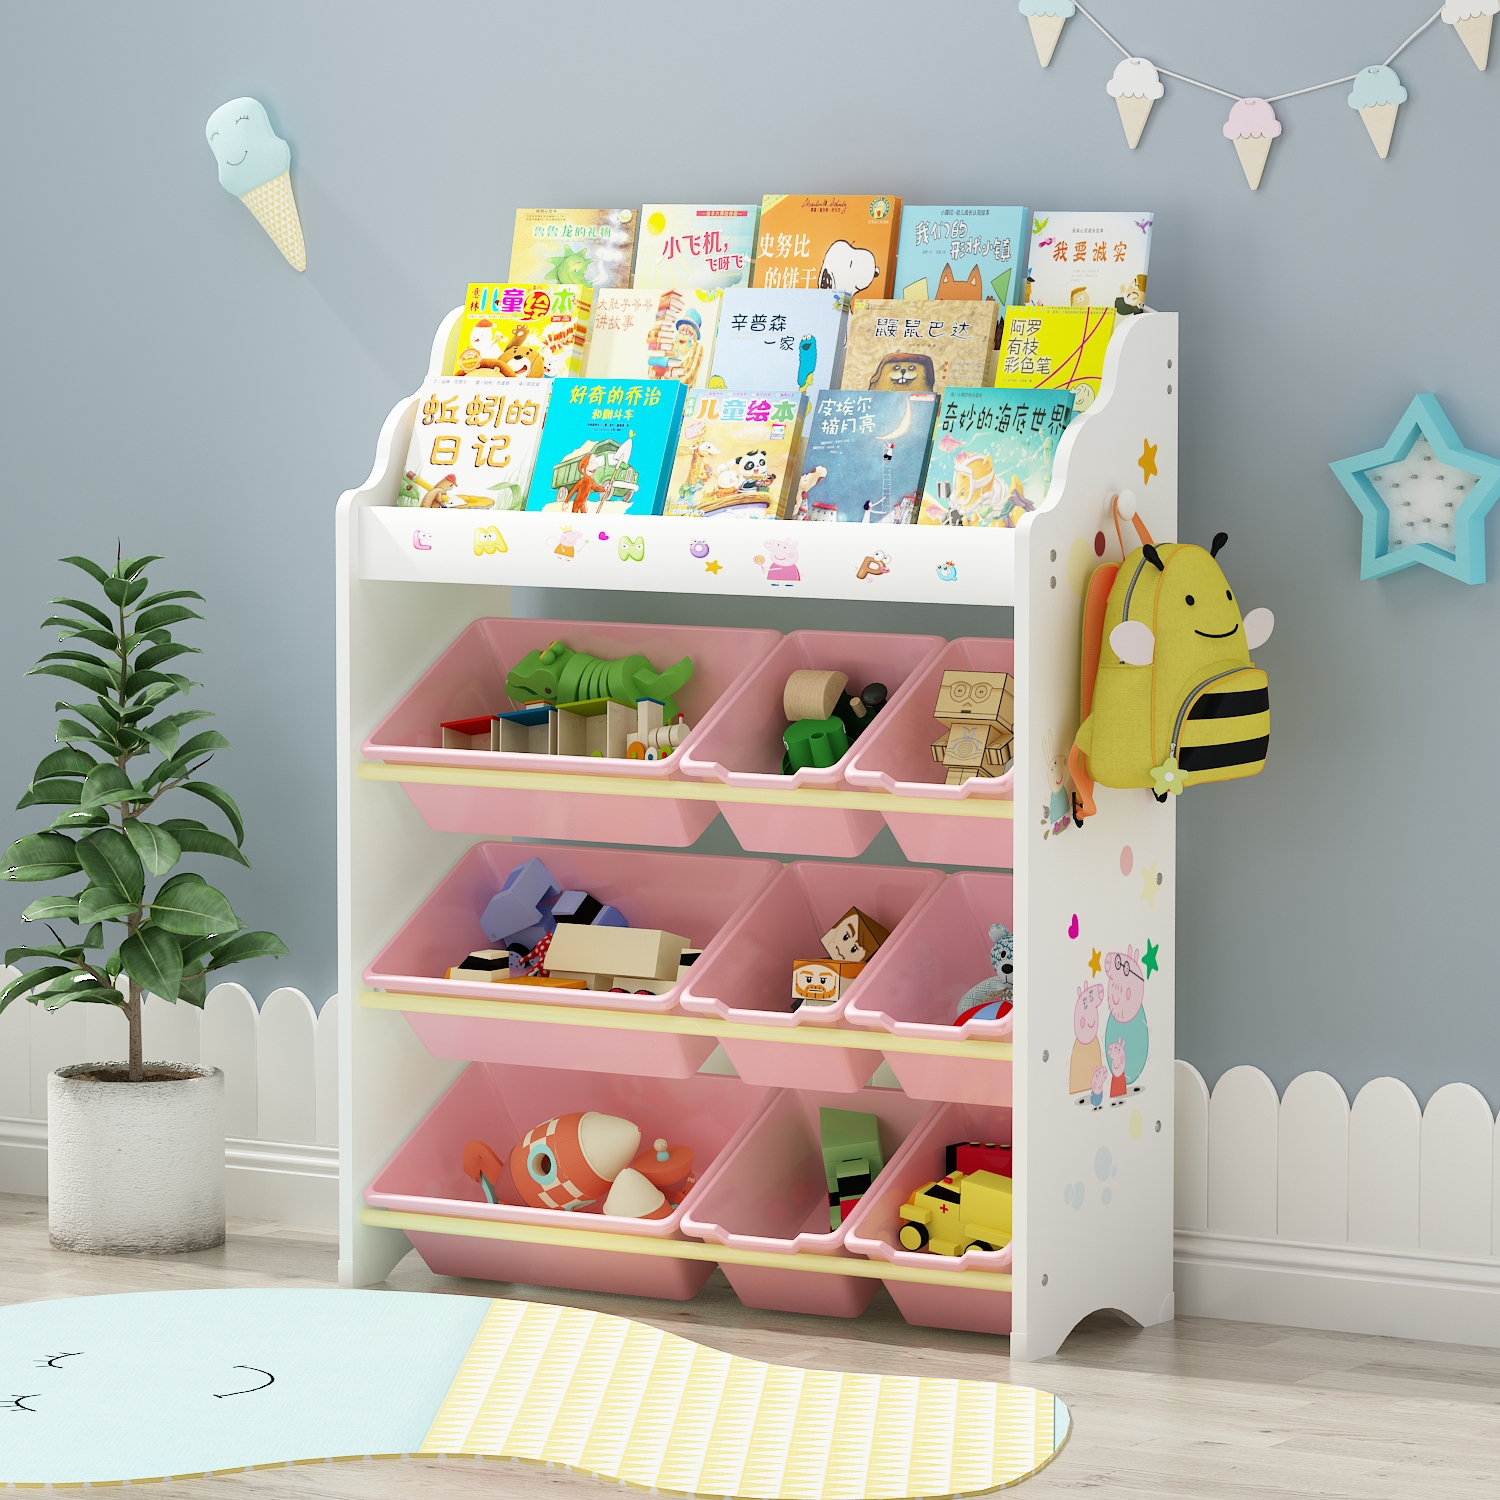 цветные стеллажи для детской комнаты